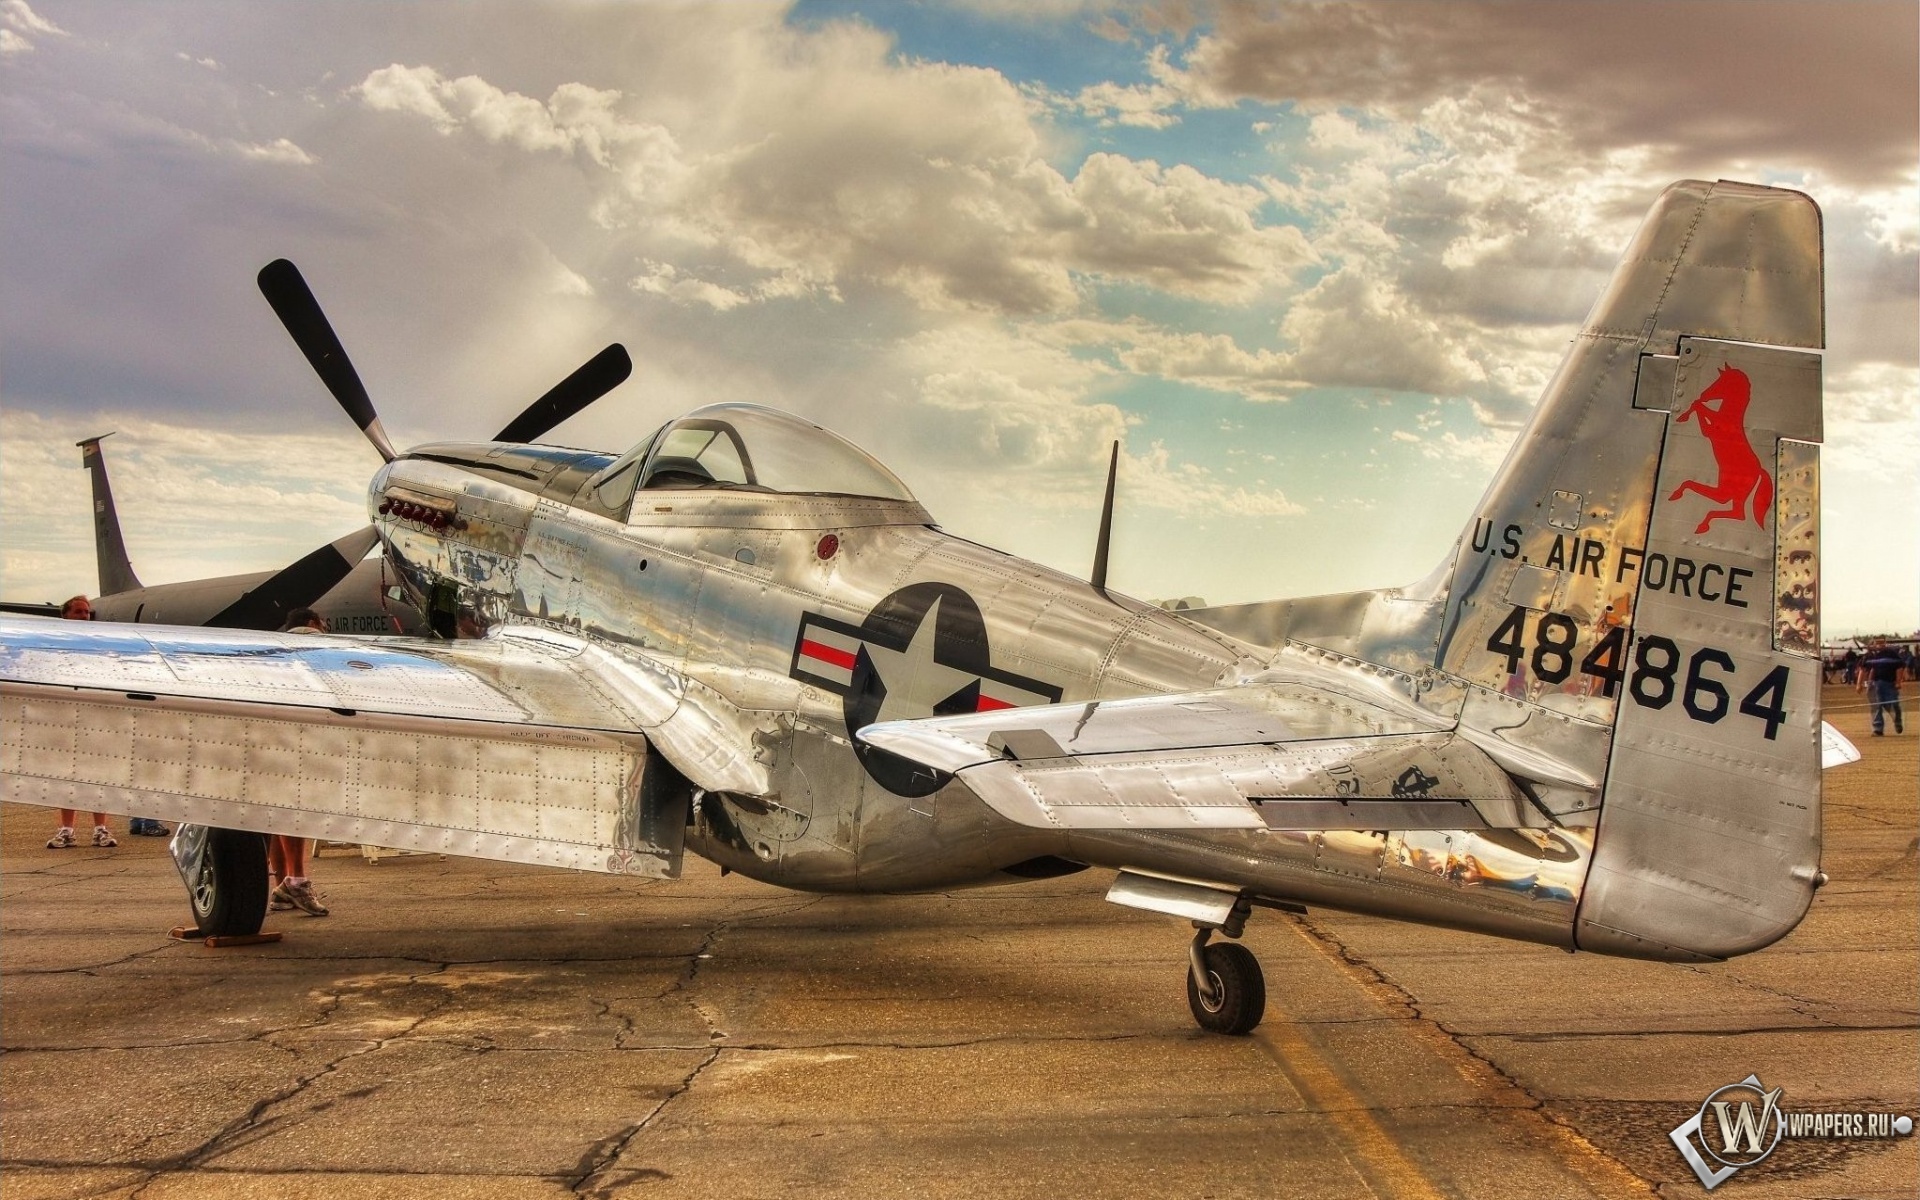 https://wpapers.ru/wallpapers/avia/fighters/13450/1920x1200_North-American-P-51-Mustang.jpg